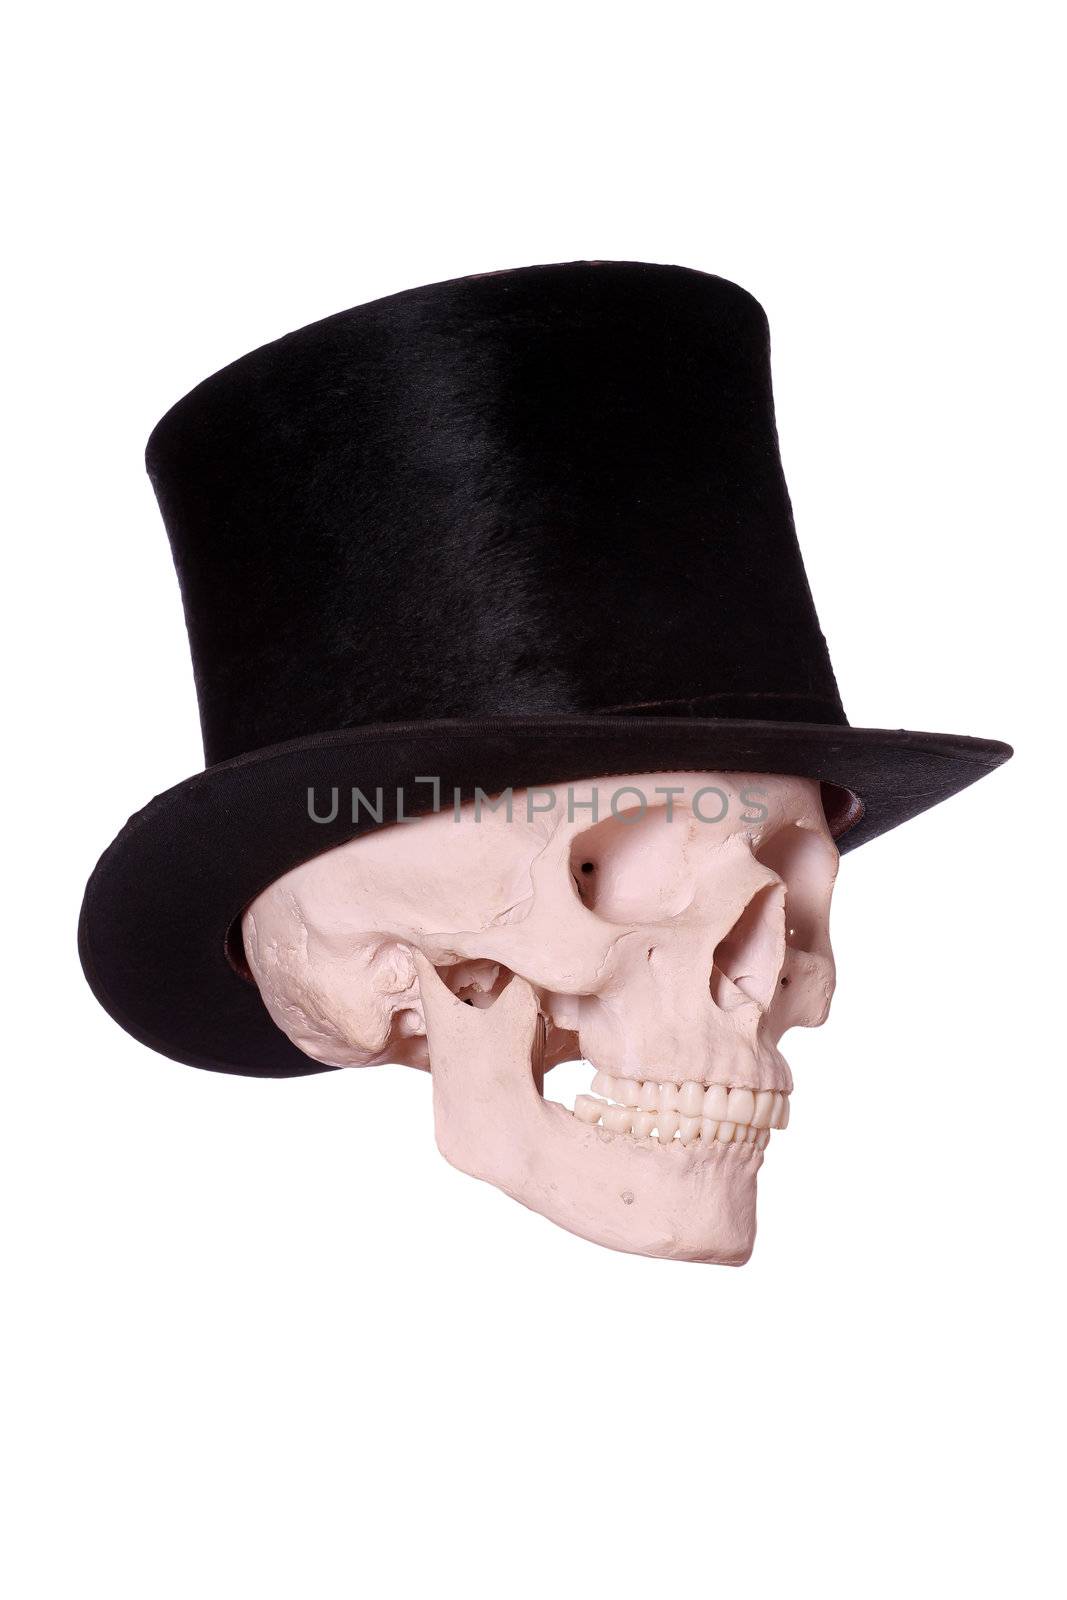 old hat on skull